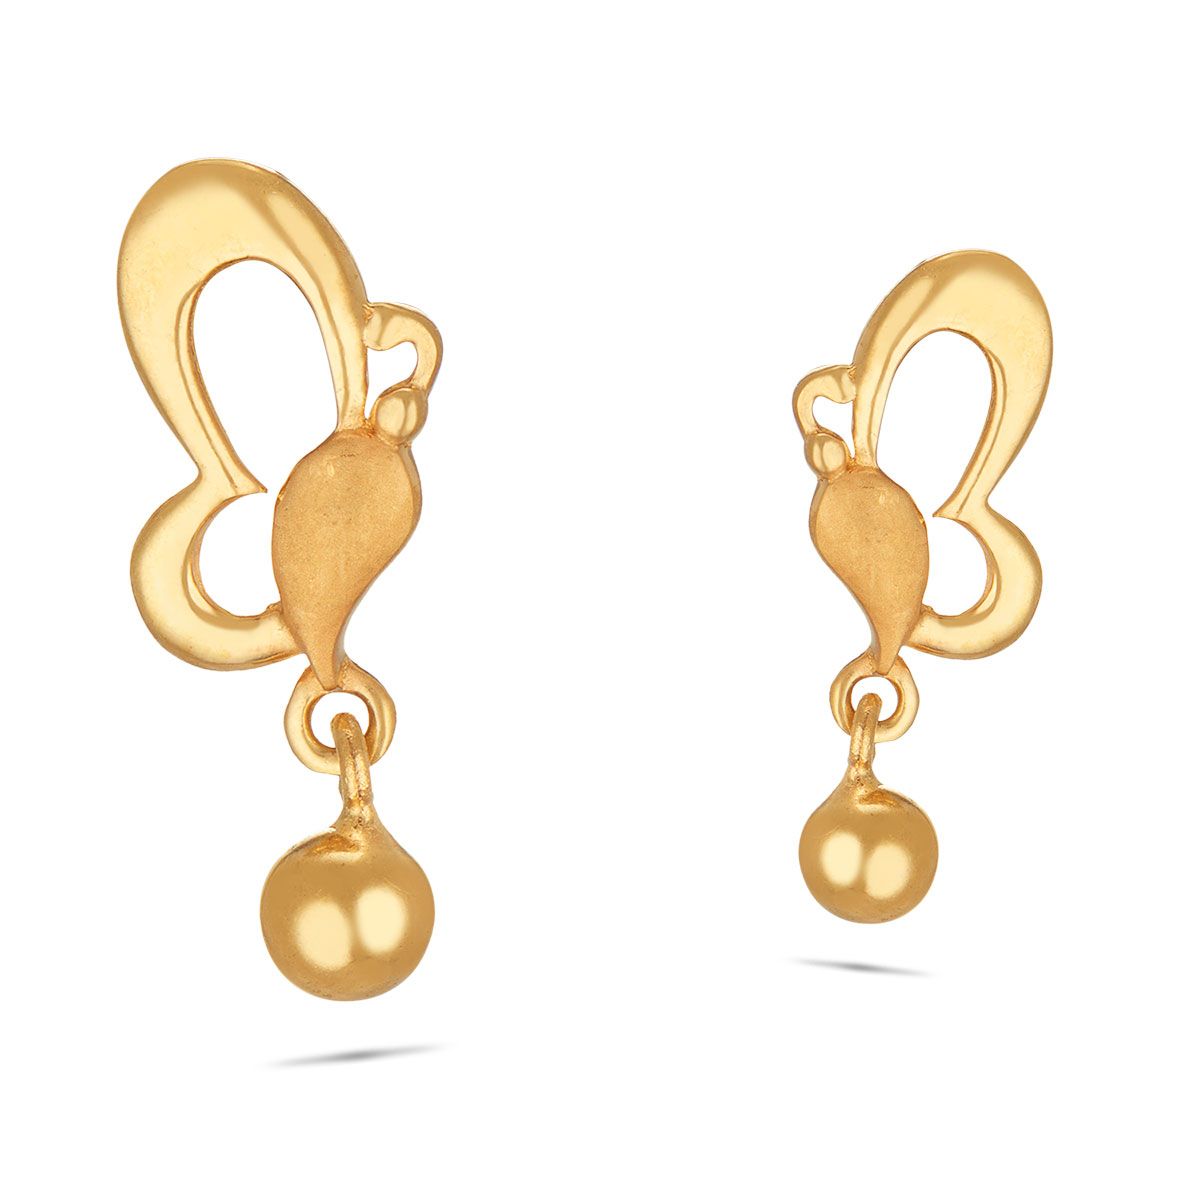 Update 80+ gold earrings stylish latest - esthdonghoadian